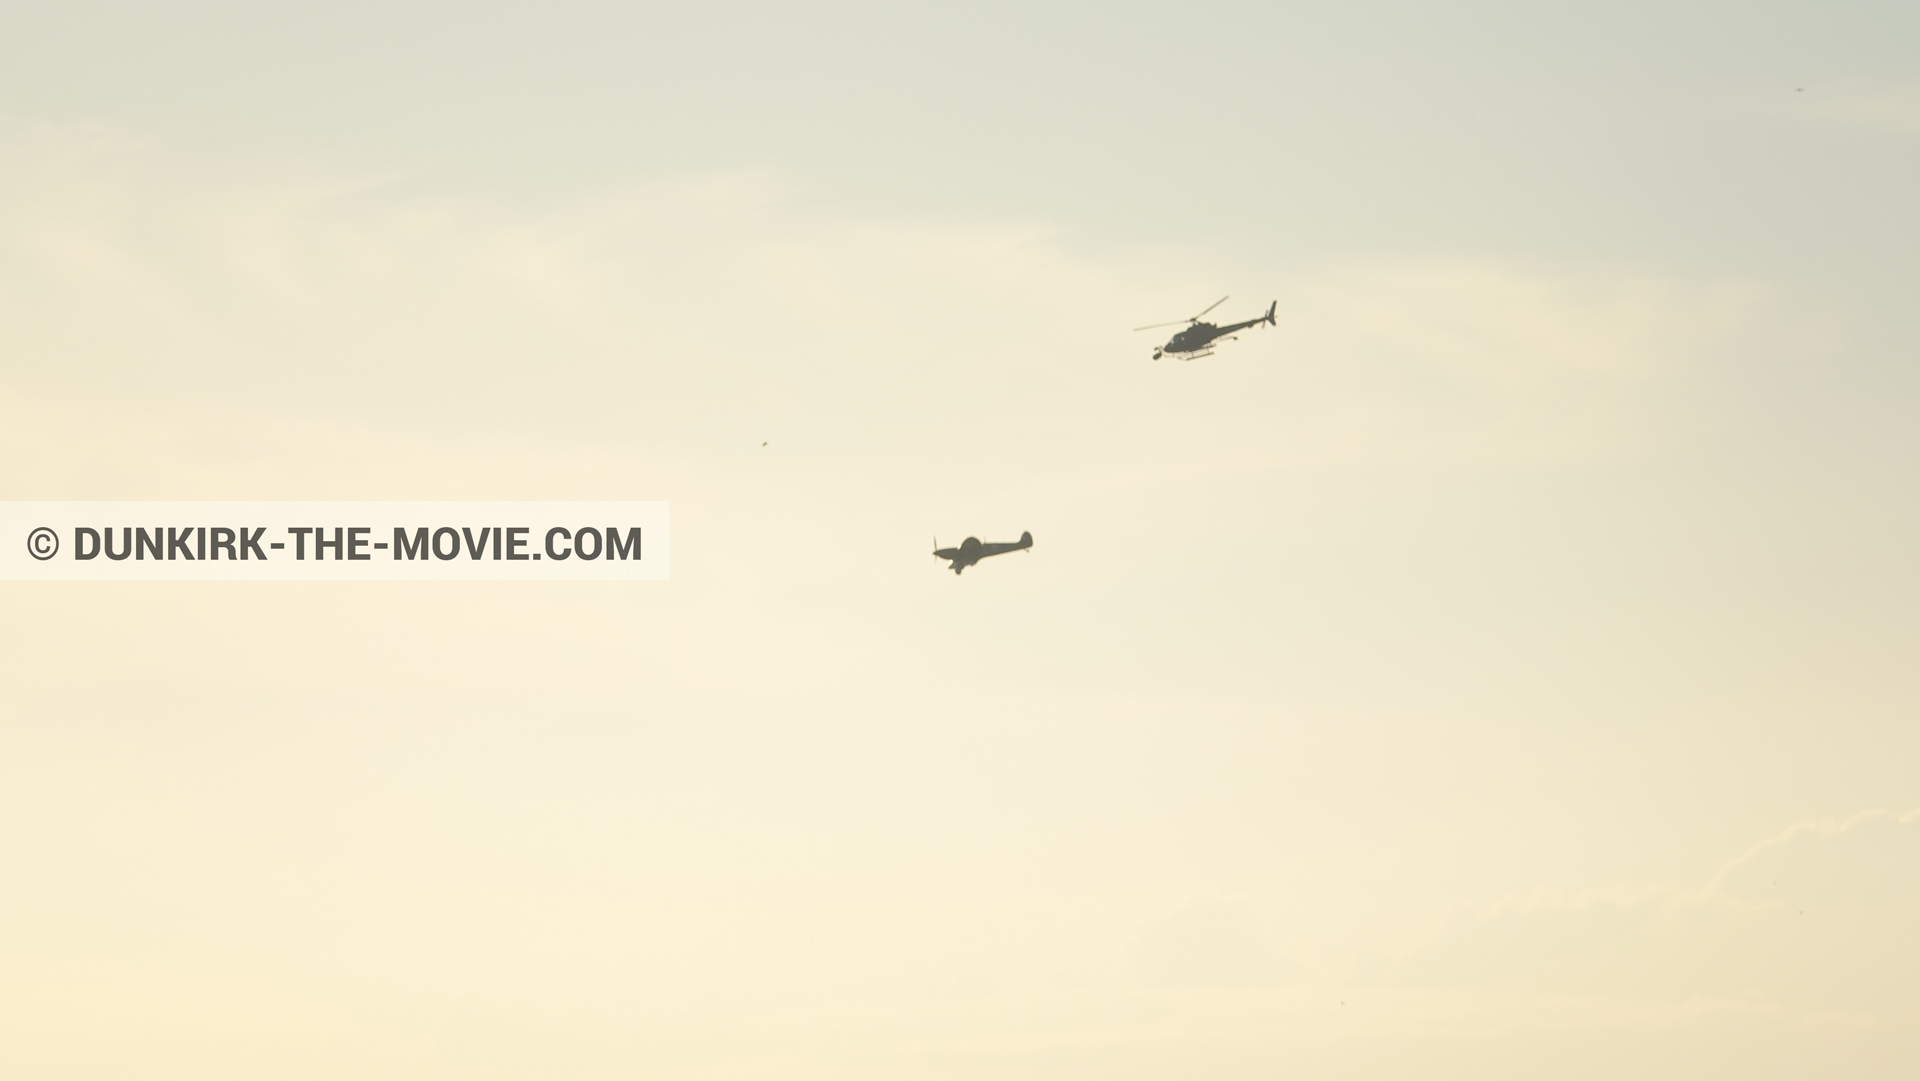 Fotos con avion, cielo anaranjado, cámara helicóptero,  durante el rodaje de la película Dunkerque de Nolan